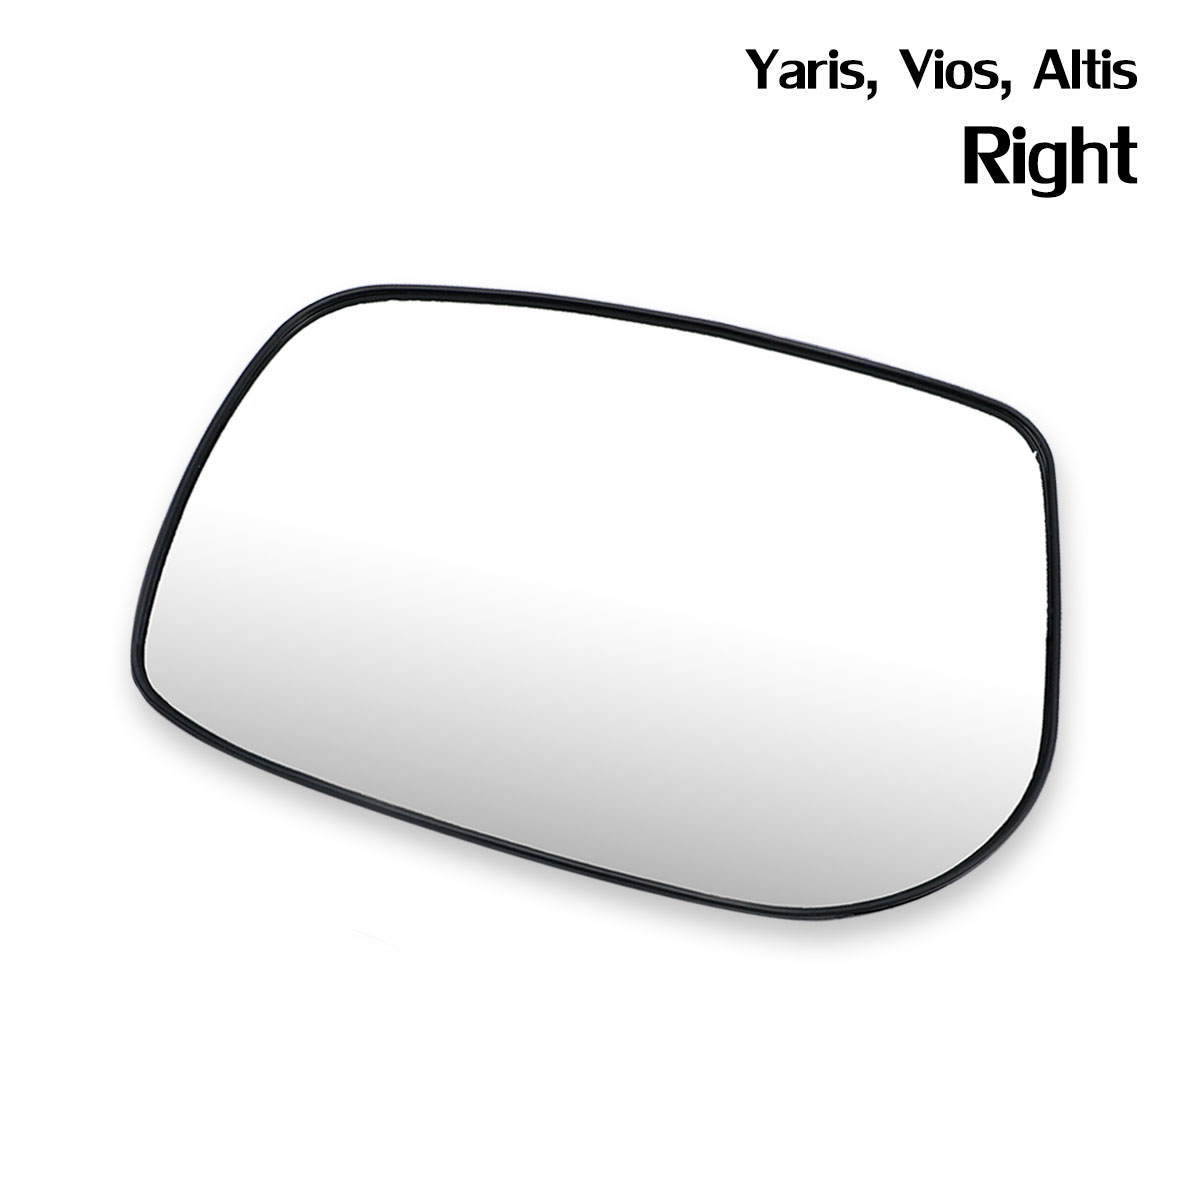 เนื้อเลนส์กระจก ข้าง ขวา ใส่ Yaris,Vios, Altis ปี 2007-2013 Right Wing Side Door Mirror Glass Len Yaris,Vios, Altis COROLLA E140 VIOS XP90 VITZ YARIS Toyota มีบริการเก็บเงินปลายทาง